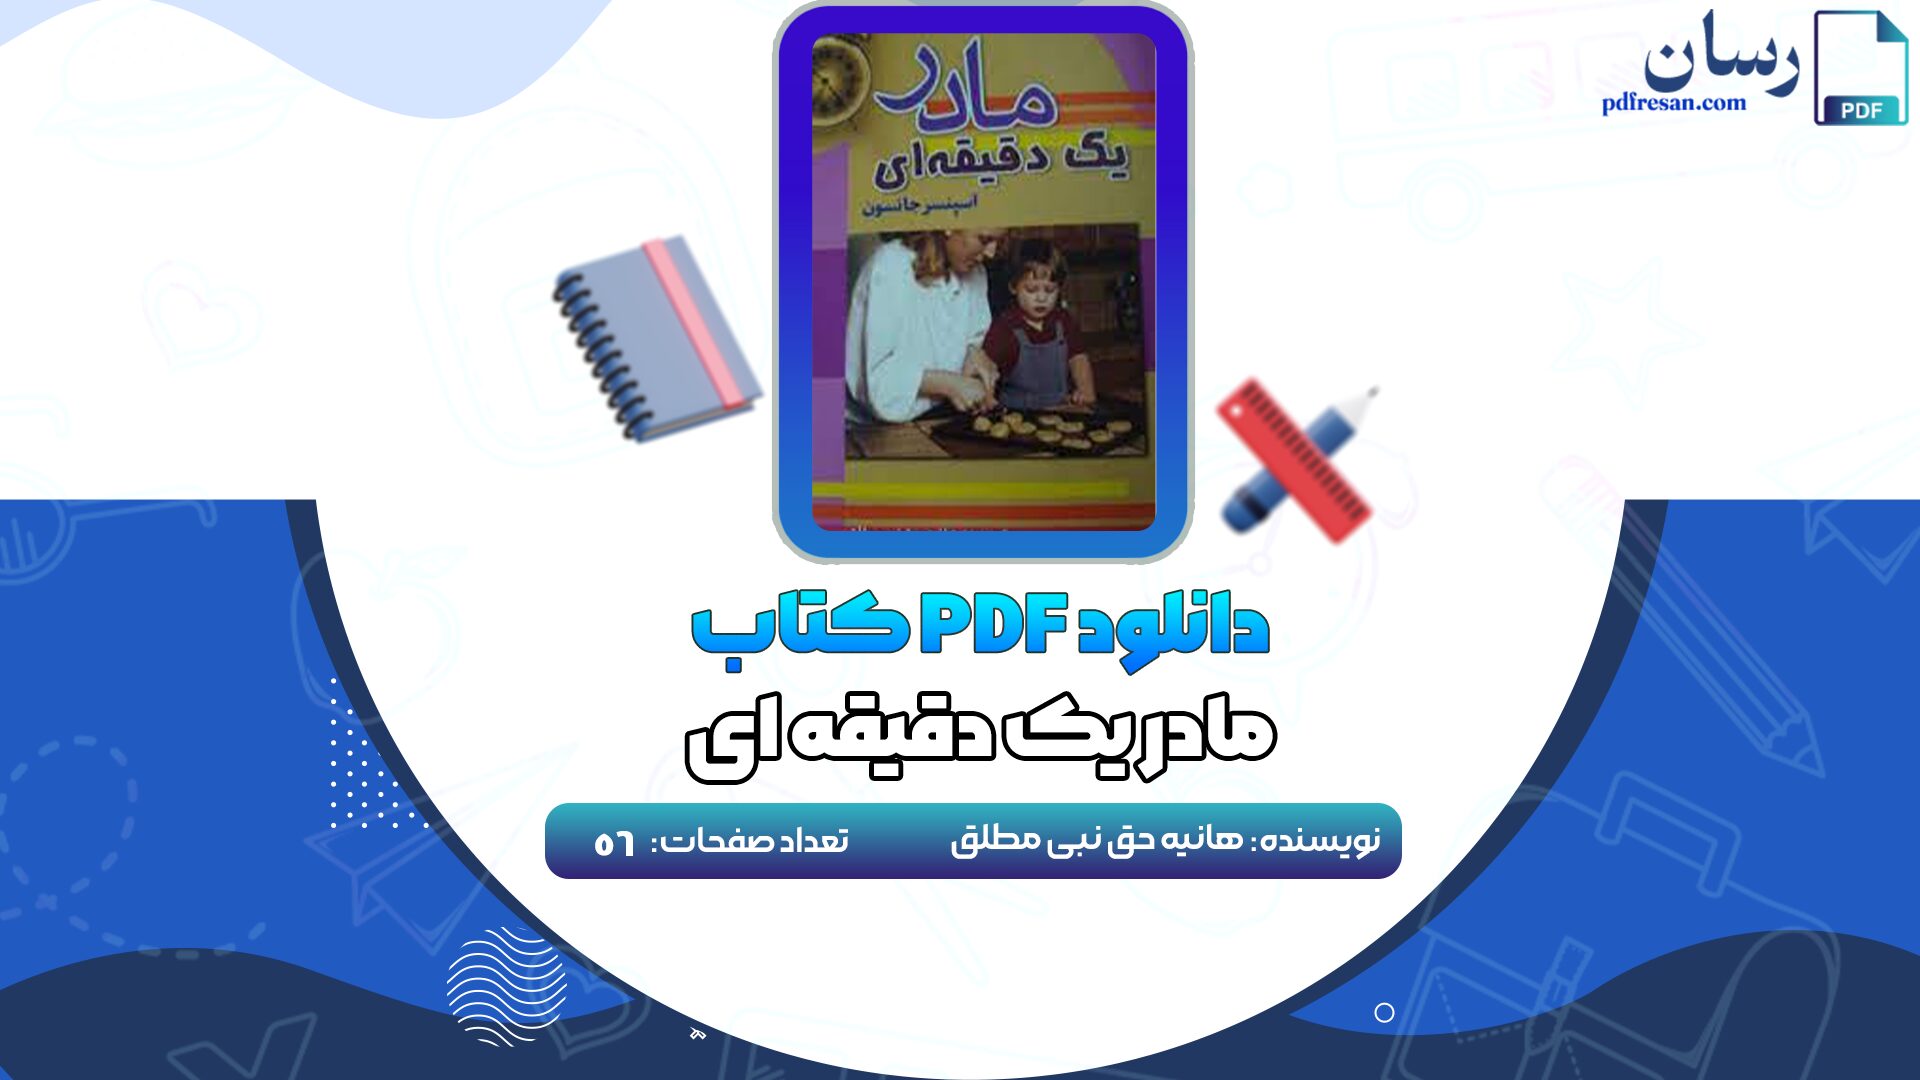 دانلود کتاب مادر یک دقیقه ای هانیه حق نبی مطلق PDF